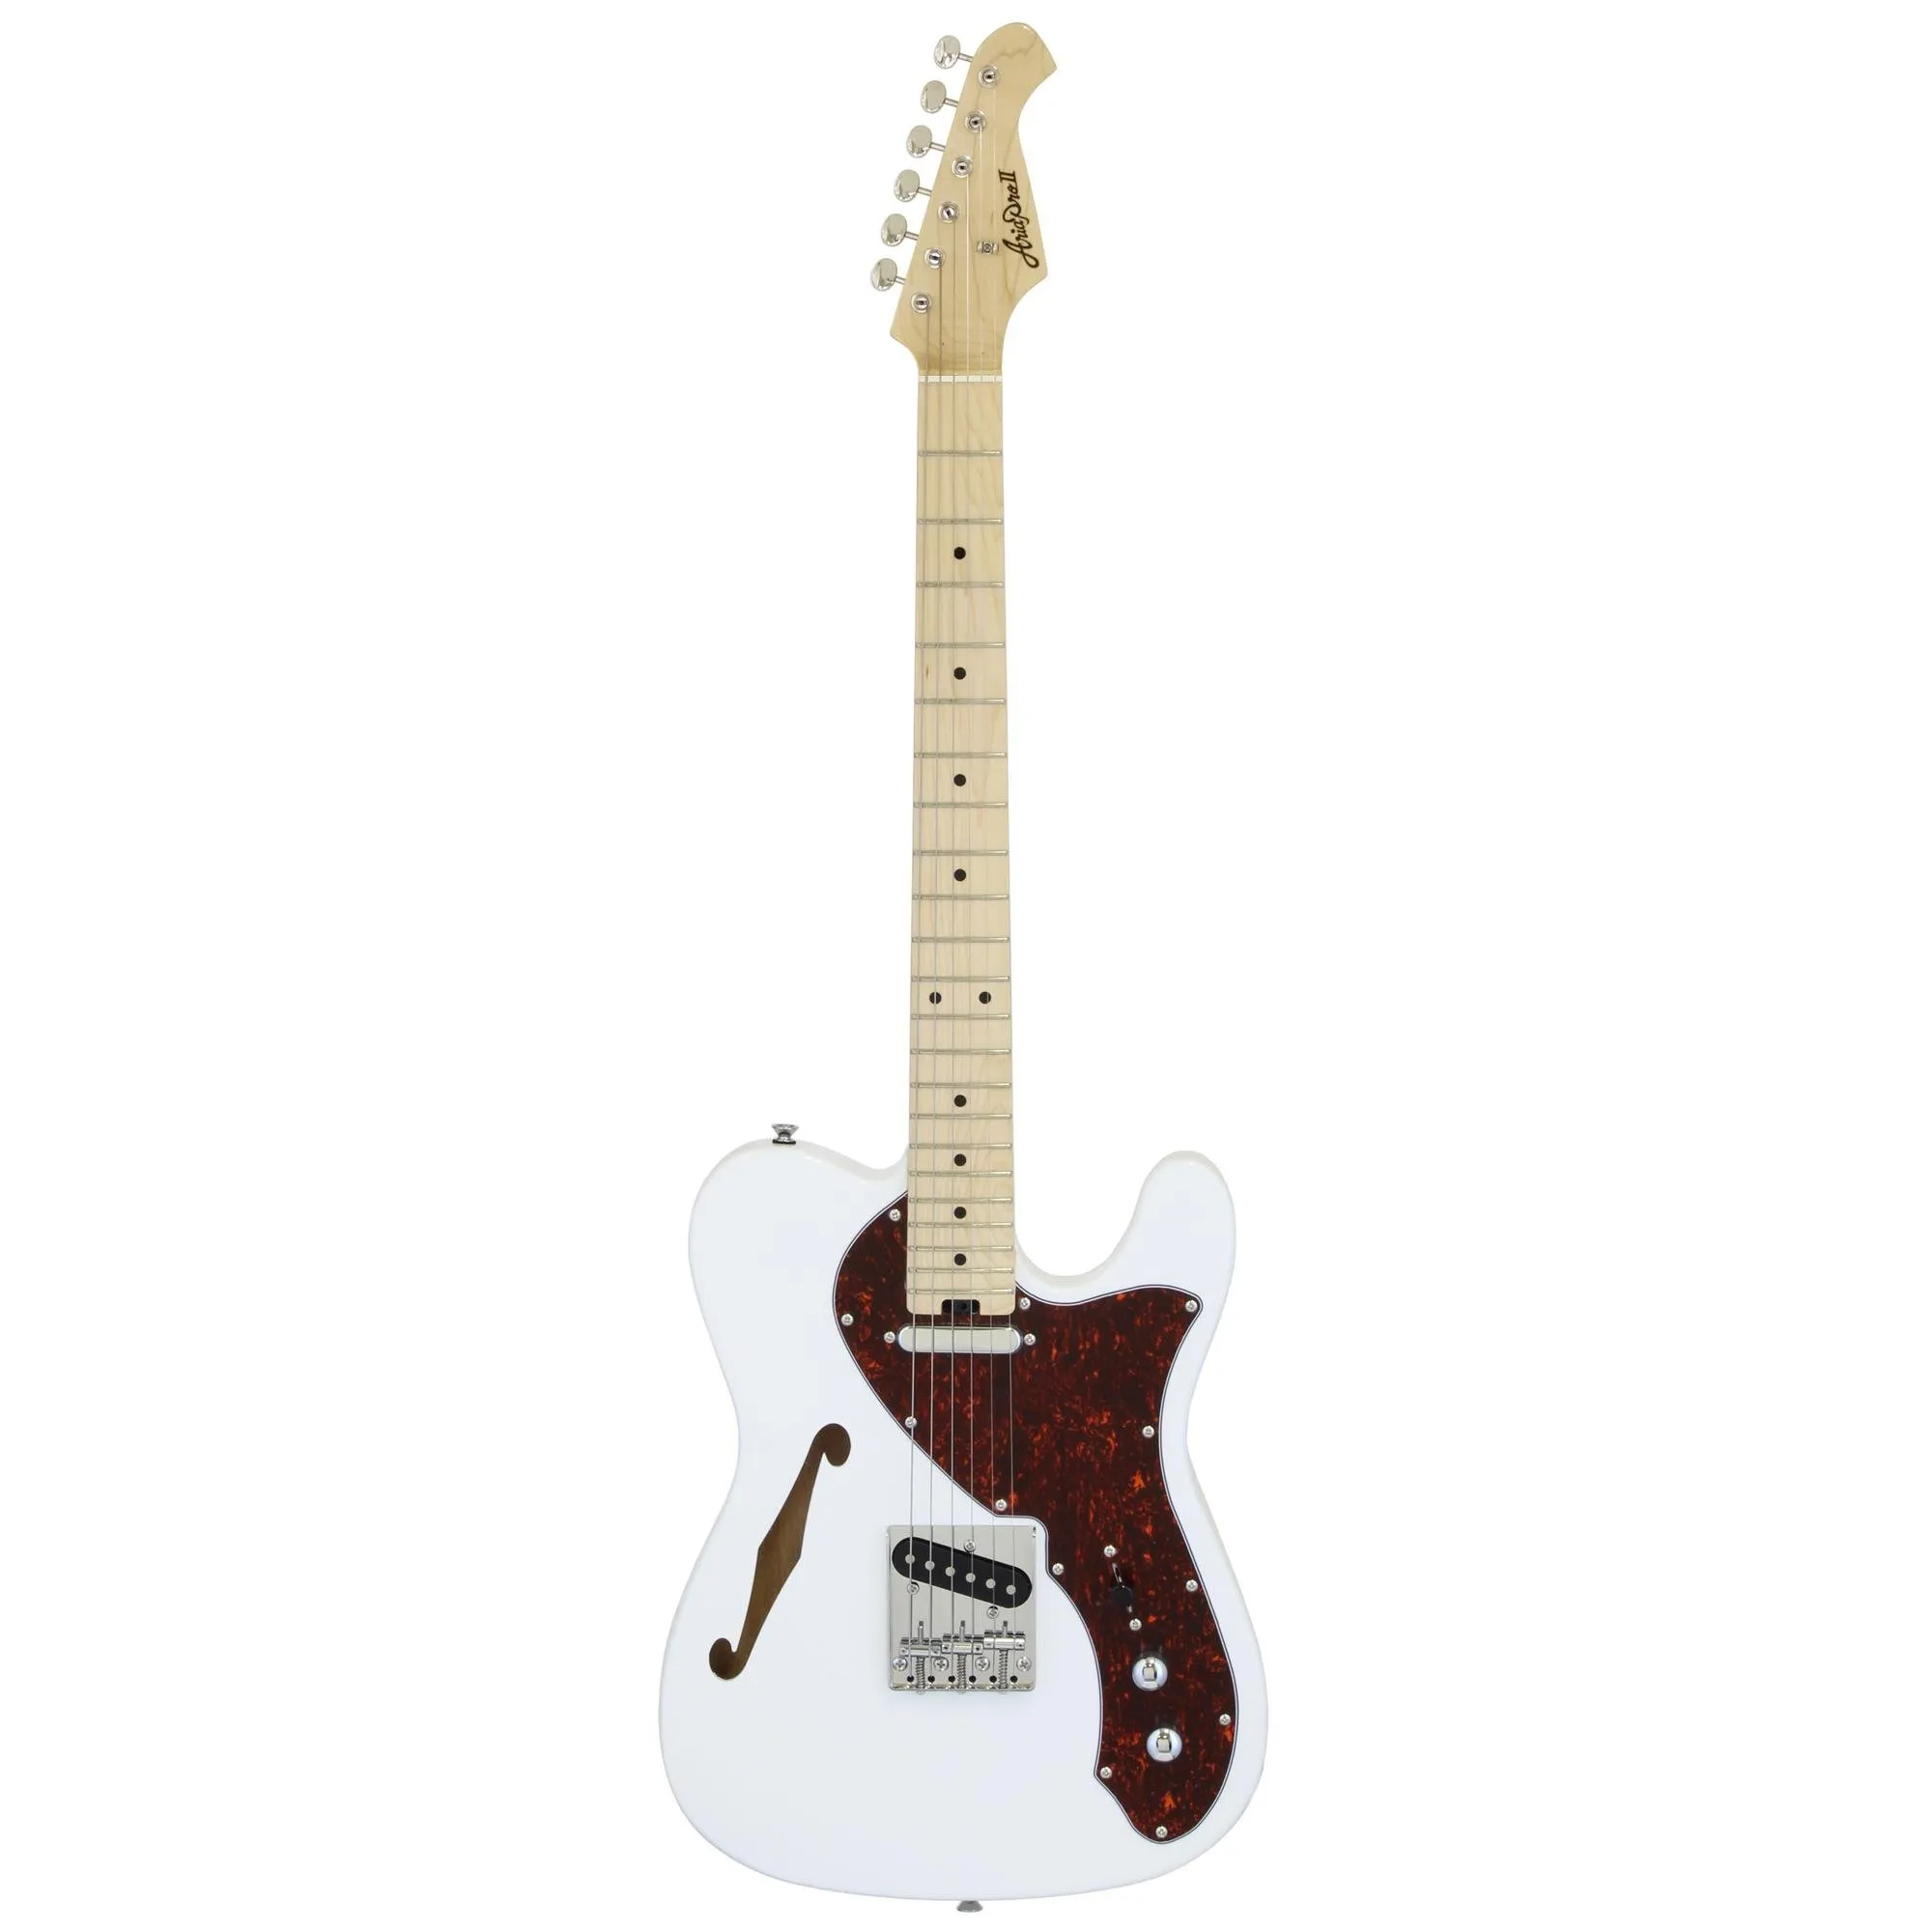 Guitarra Aria TEG-TL White Tortoise Pickguard por 2.689,00 à vista no boleto/pix ou parcele em até 12x sem juros. Compre na loja Mundomax!